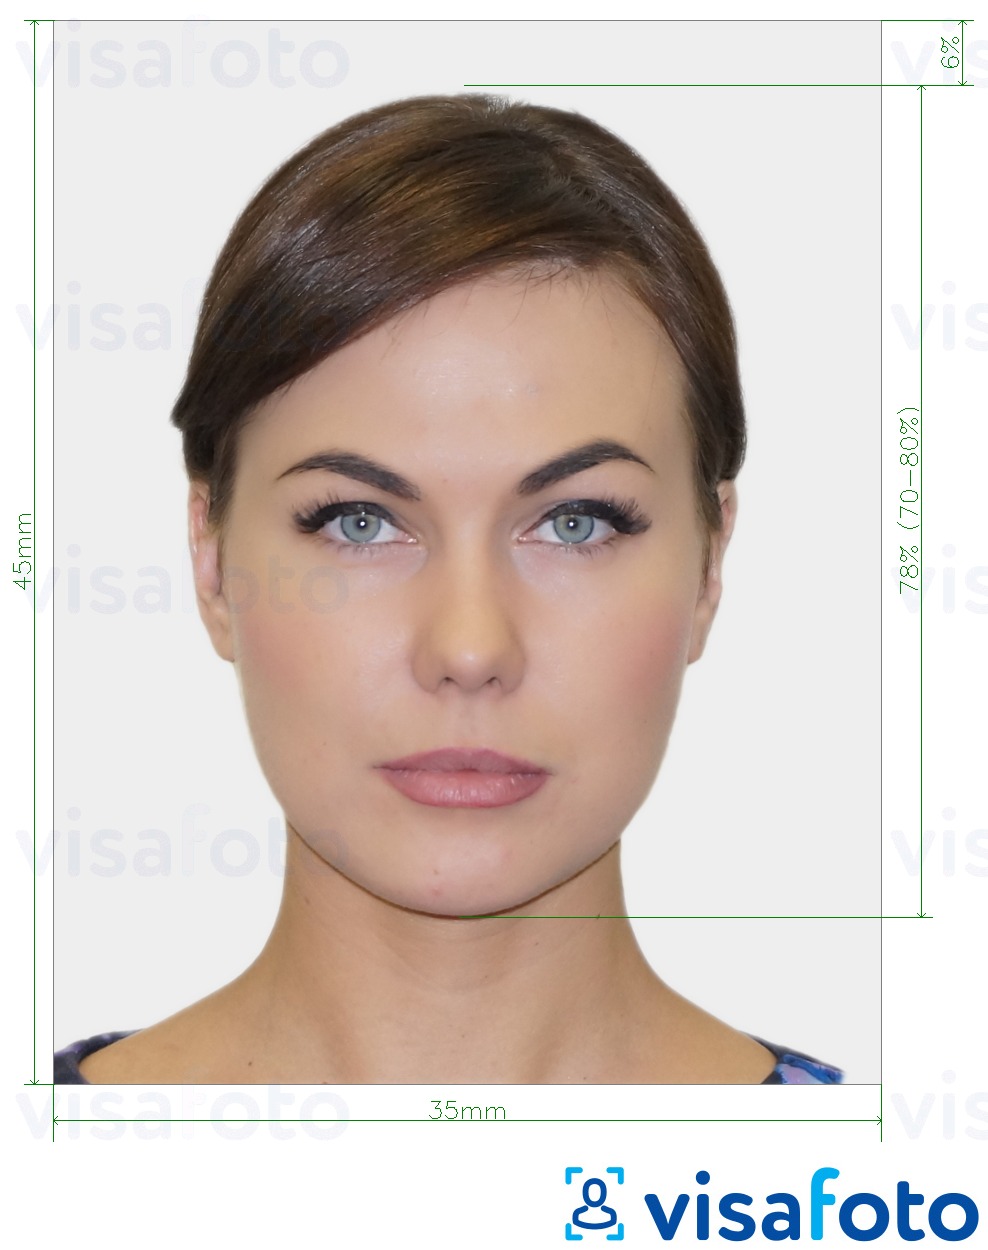 Eksempel på billede for Biometrisk pasfoto med præcis størrelsesspecifikation.